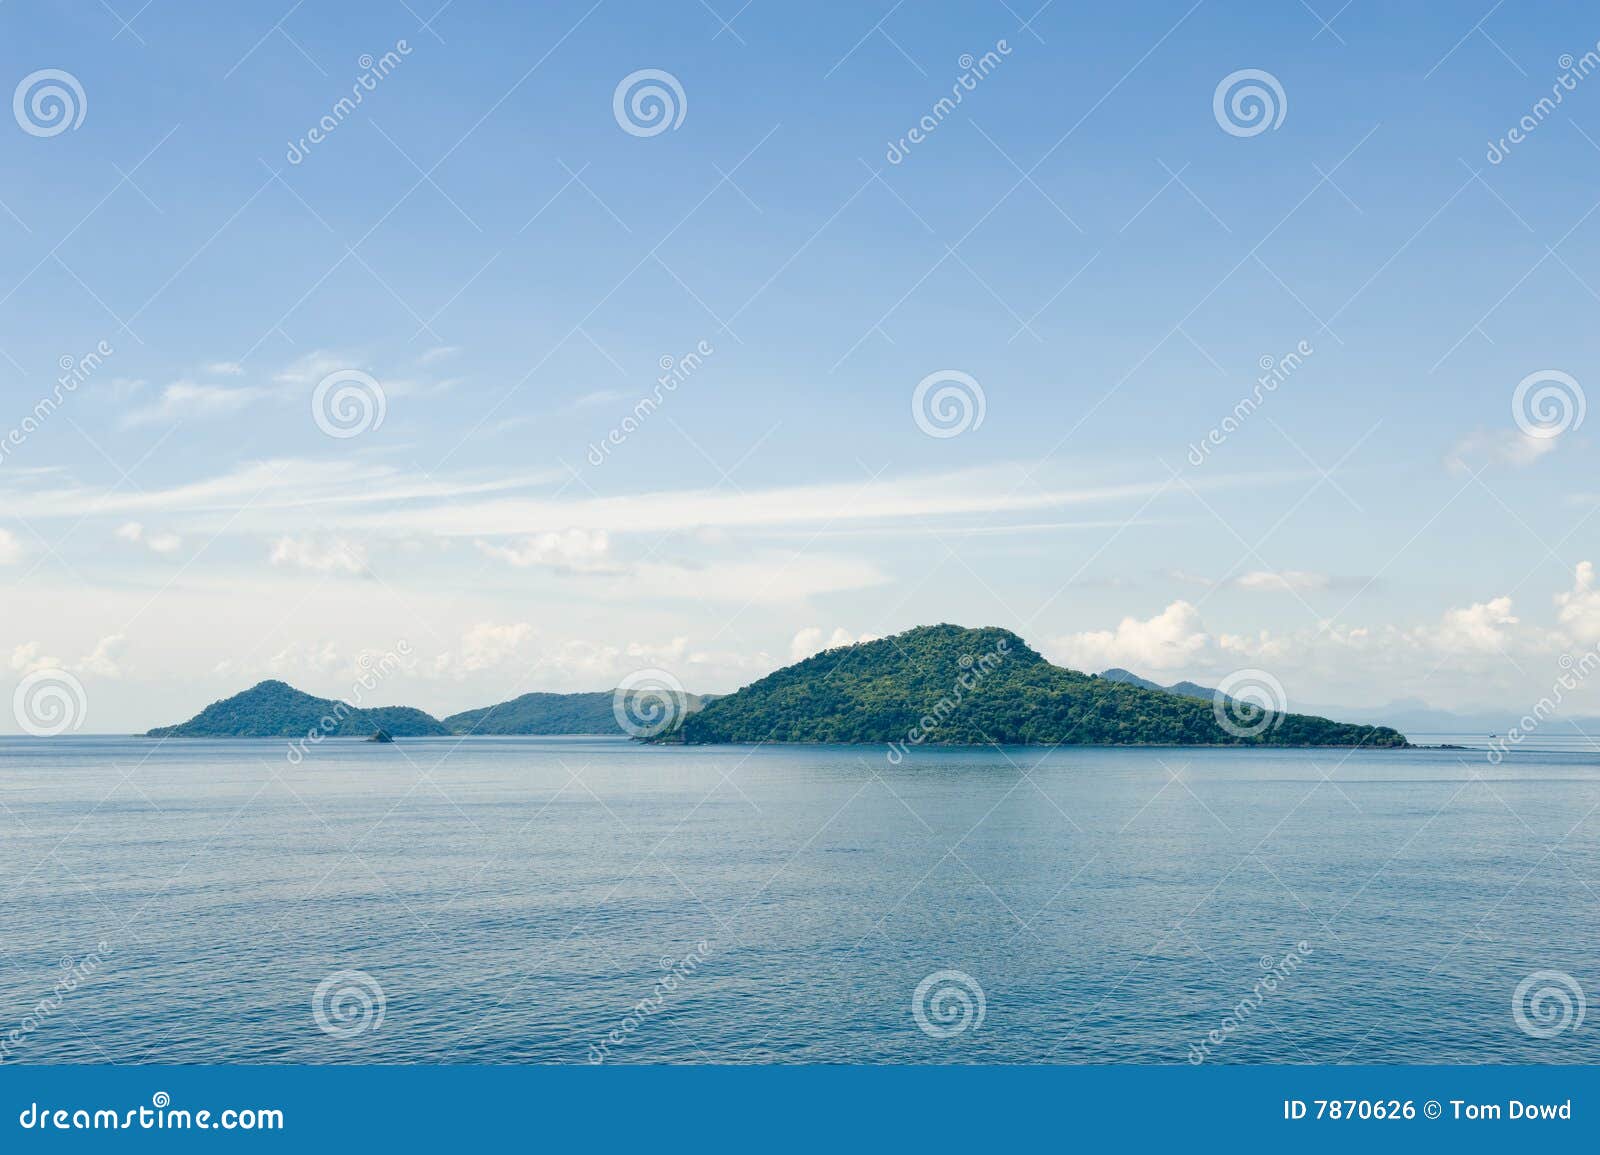 islands in picturesque ocean